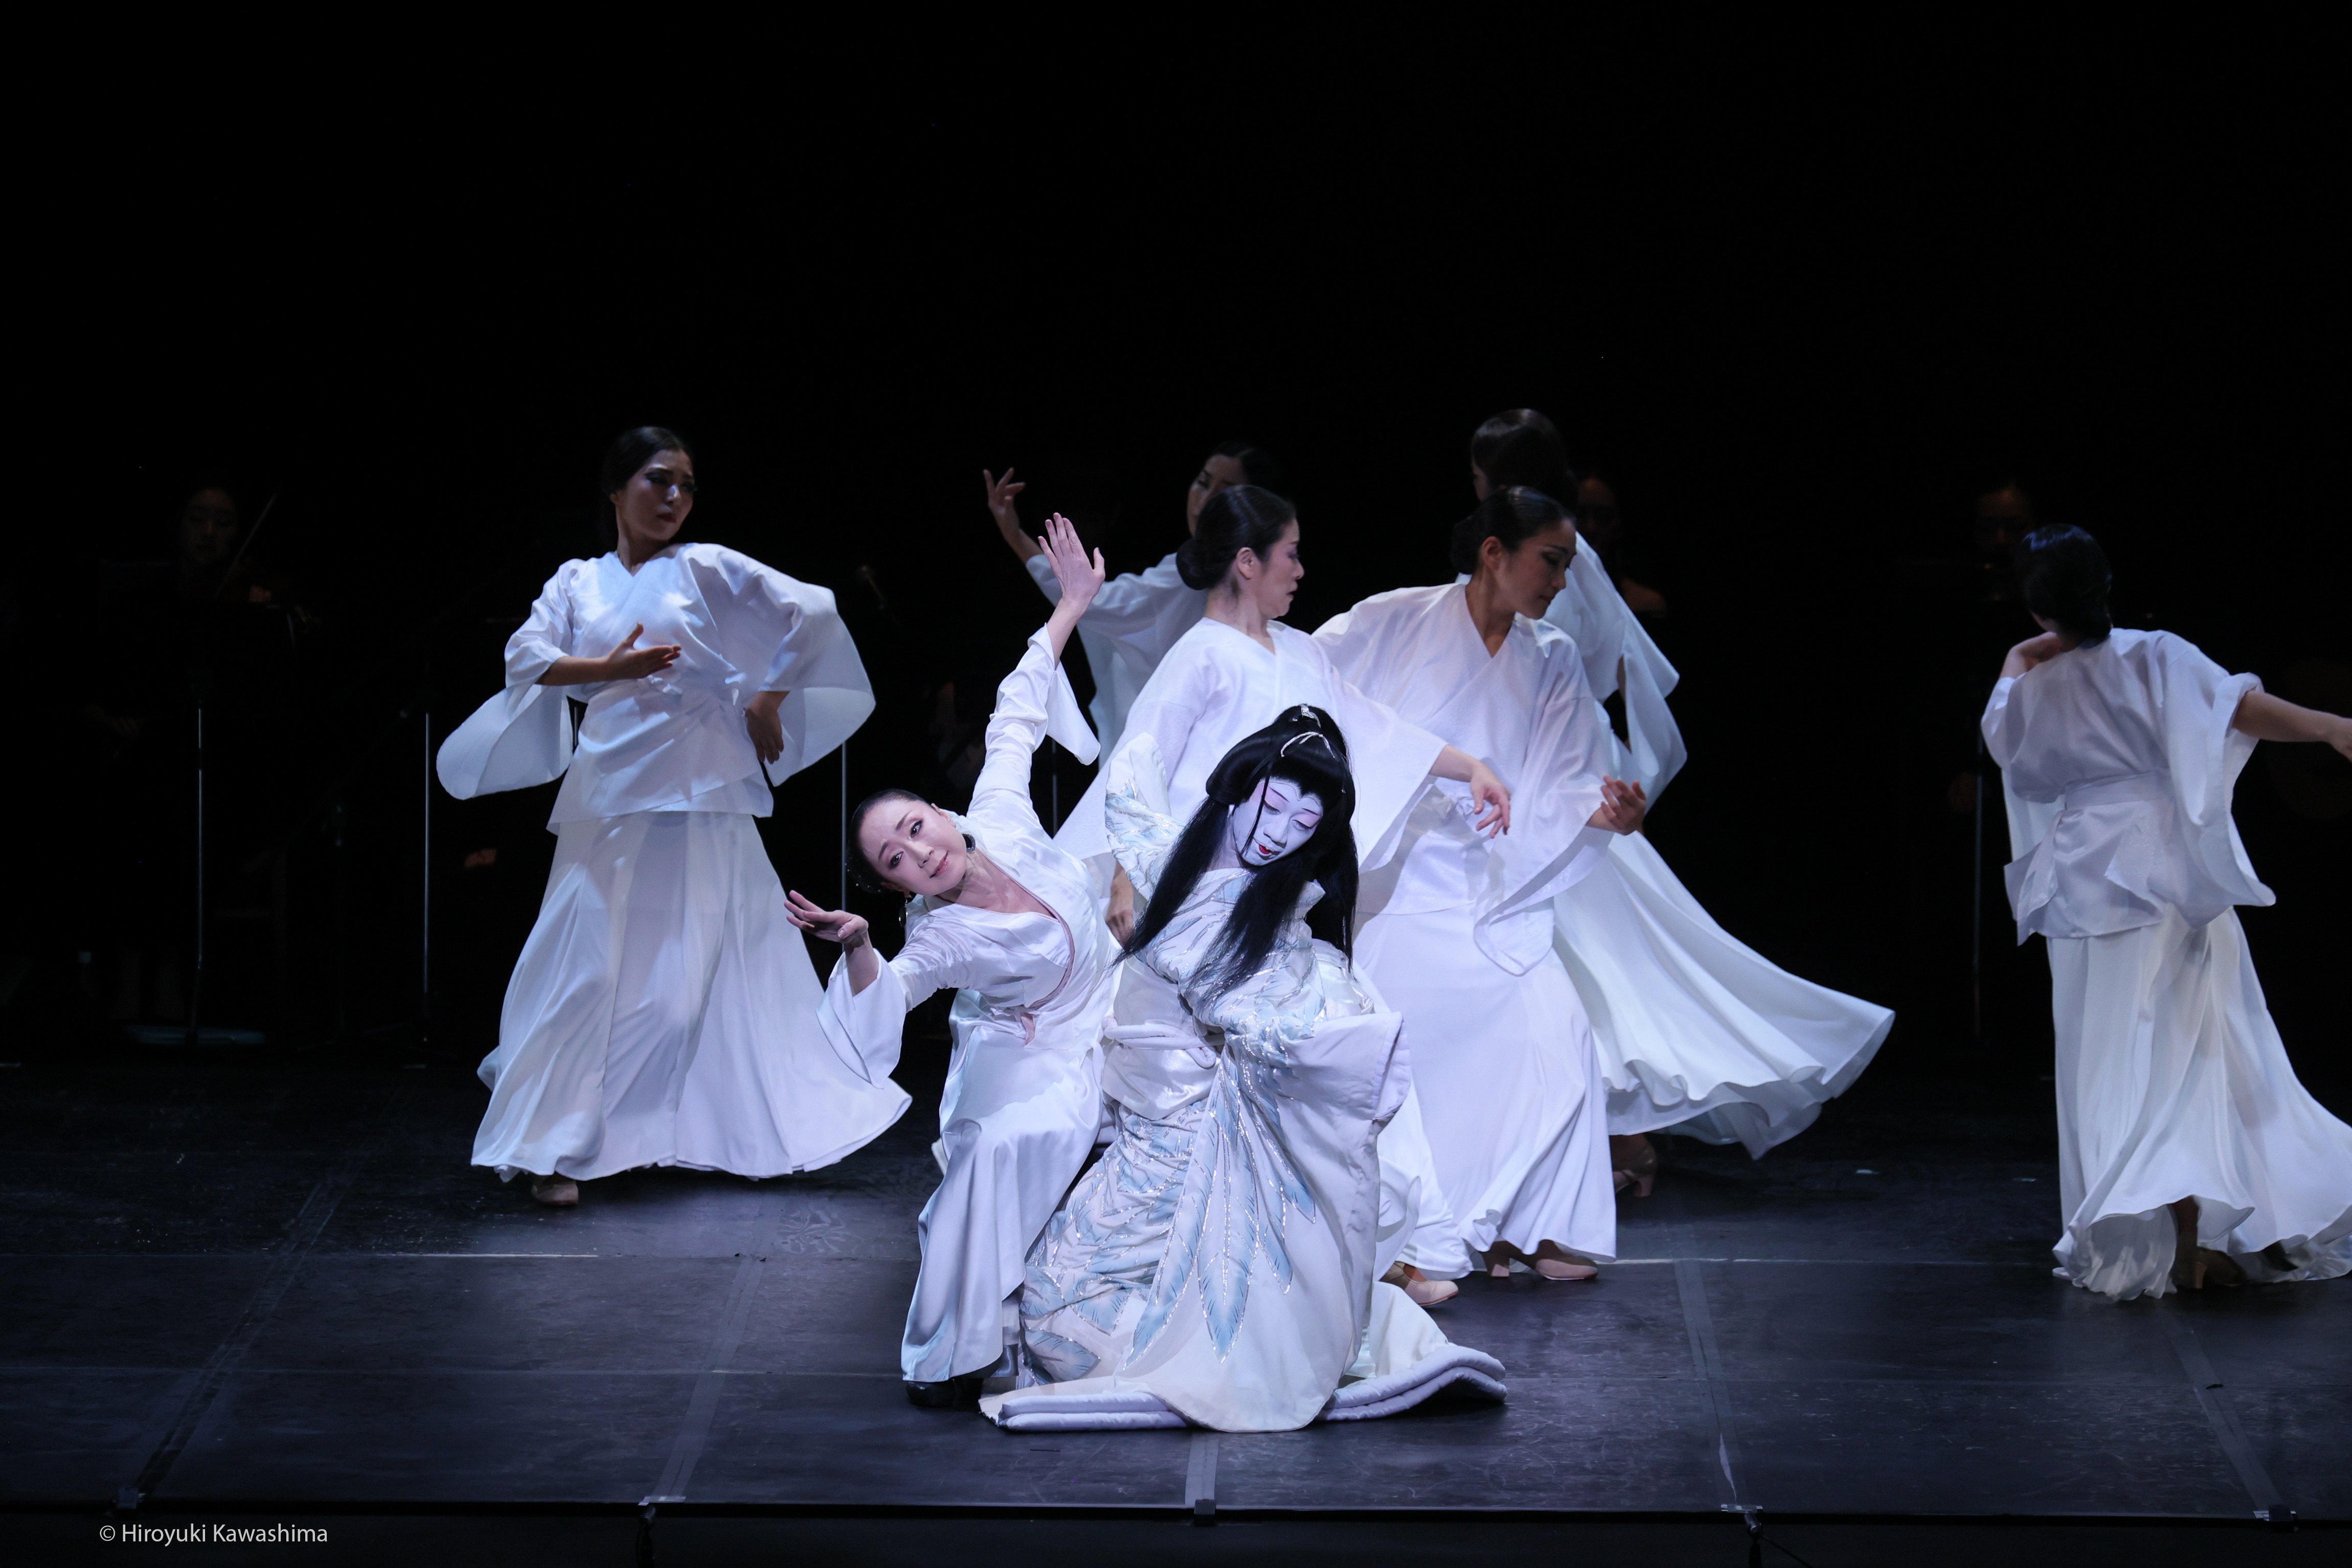 Mujeres japonesas bailando en un escenario.  Todas van vestidas de blanco.